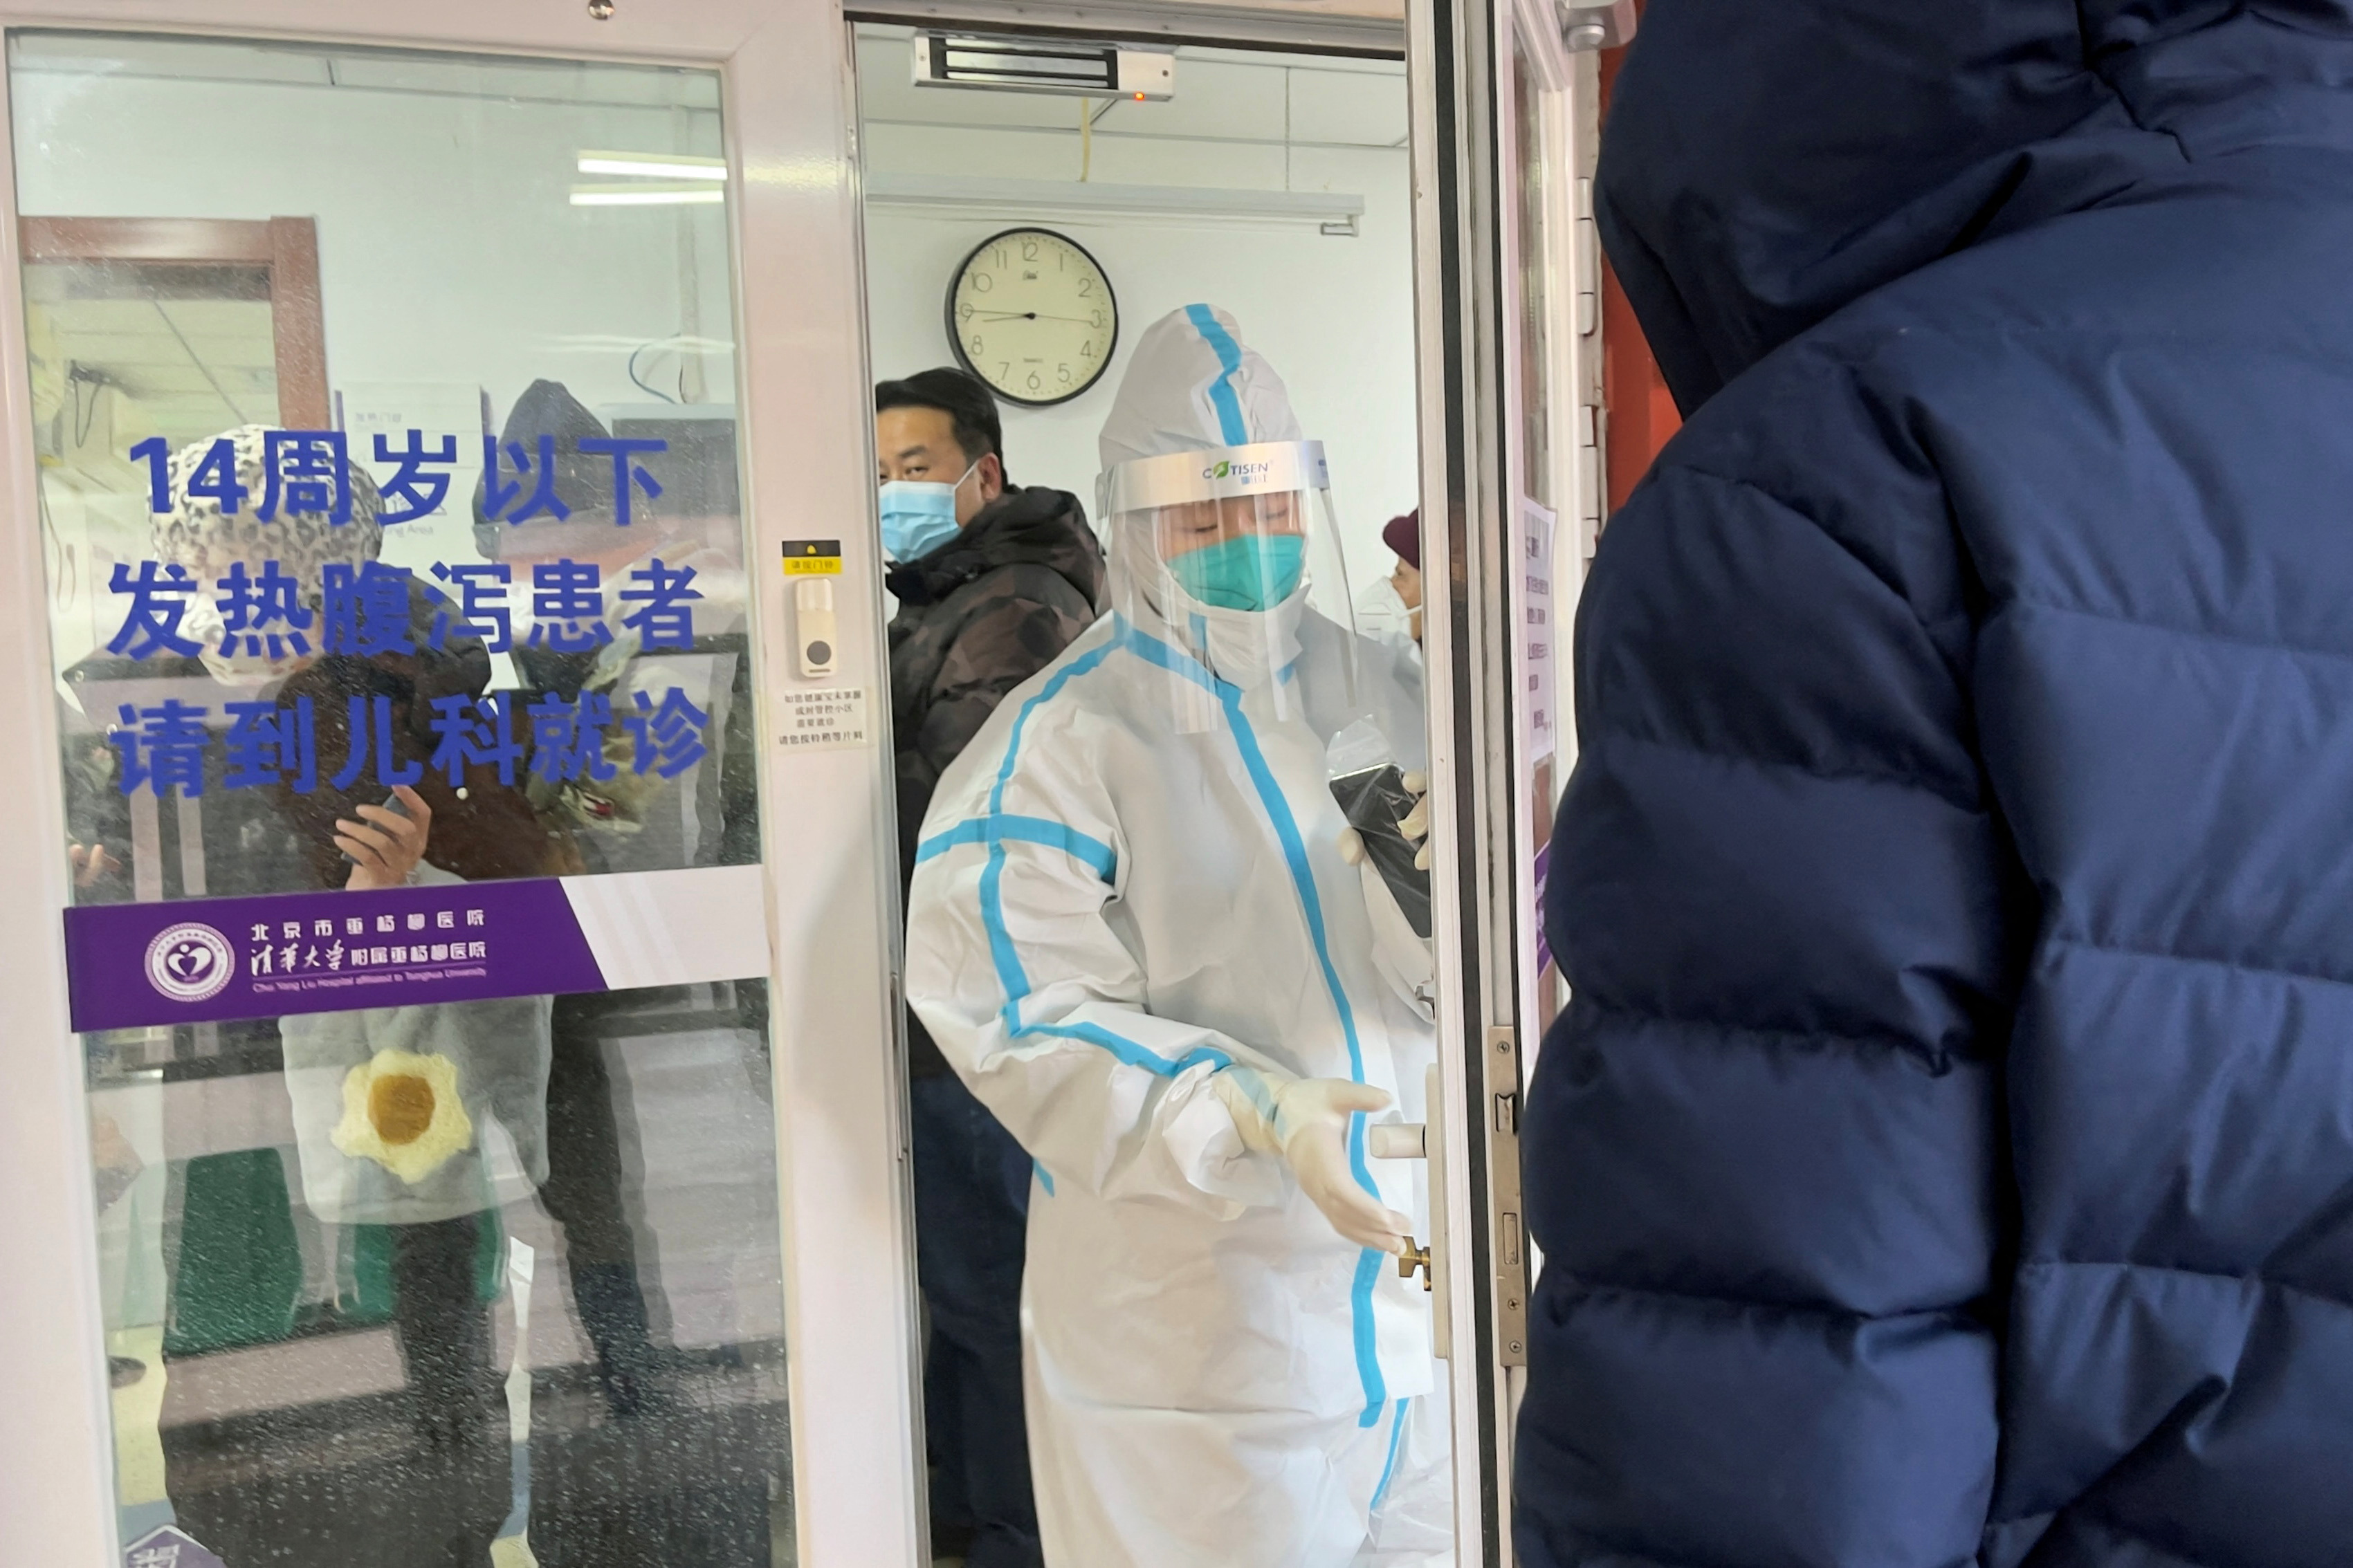 The COVID-19 outbreak in Beijing